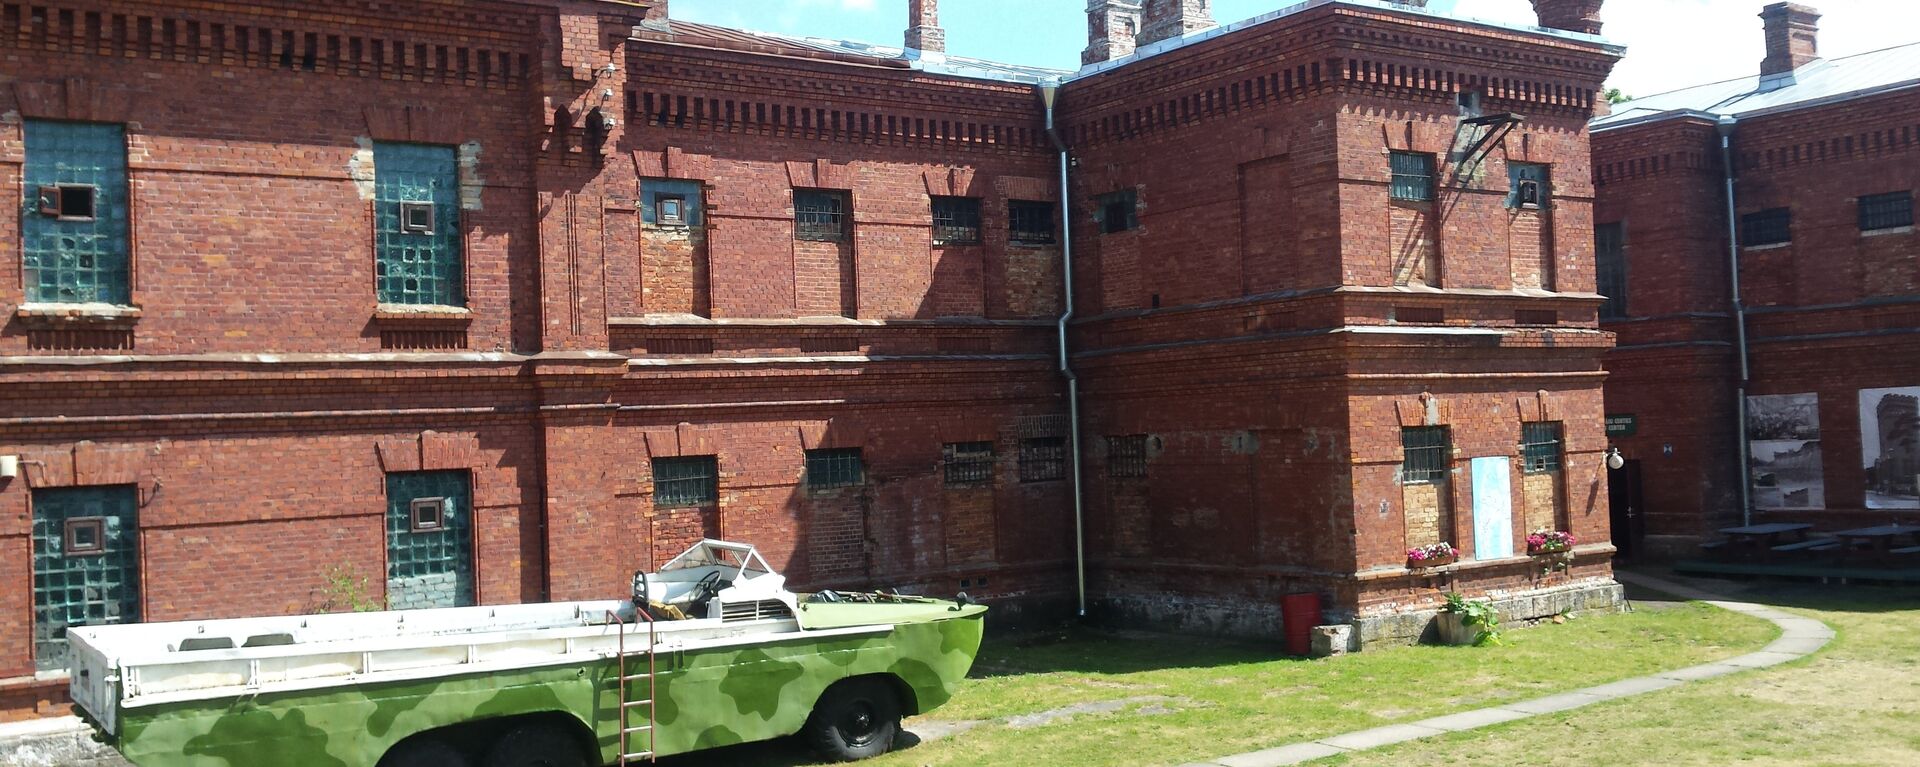 Здание военной тюрьмы в Каросте, Лиепая - Sputnik Латвия, 1920, 28.04.2020